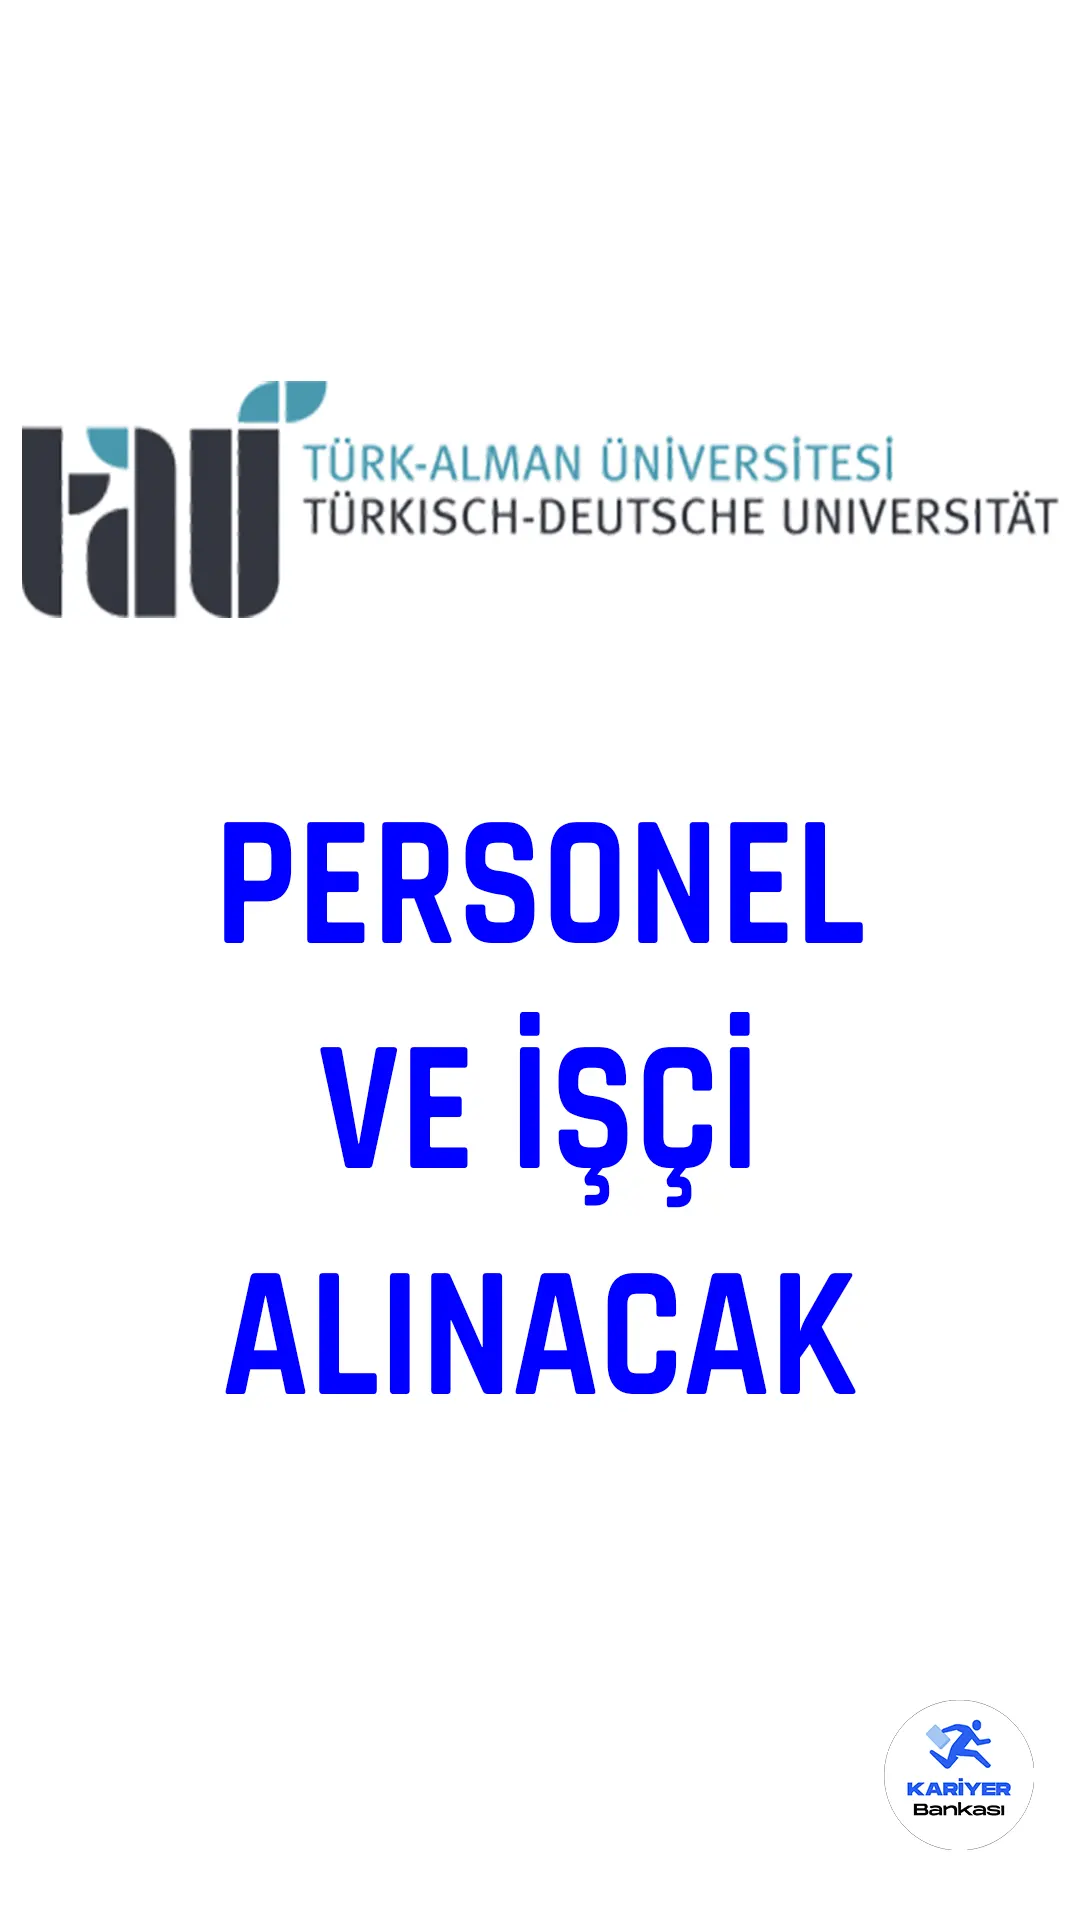 Türk-Alman Üniversitesi personel ve işçi alımı duyurusu yayımlandı.